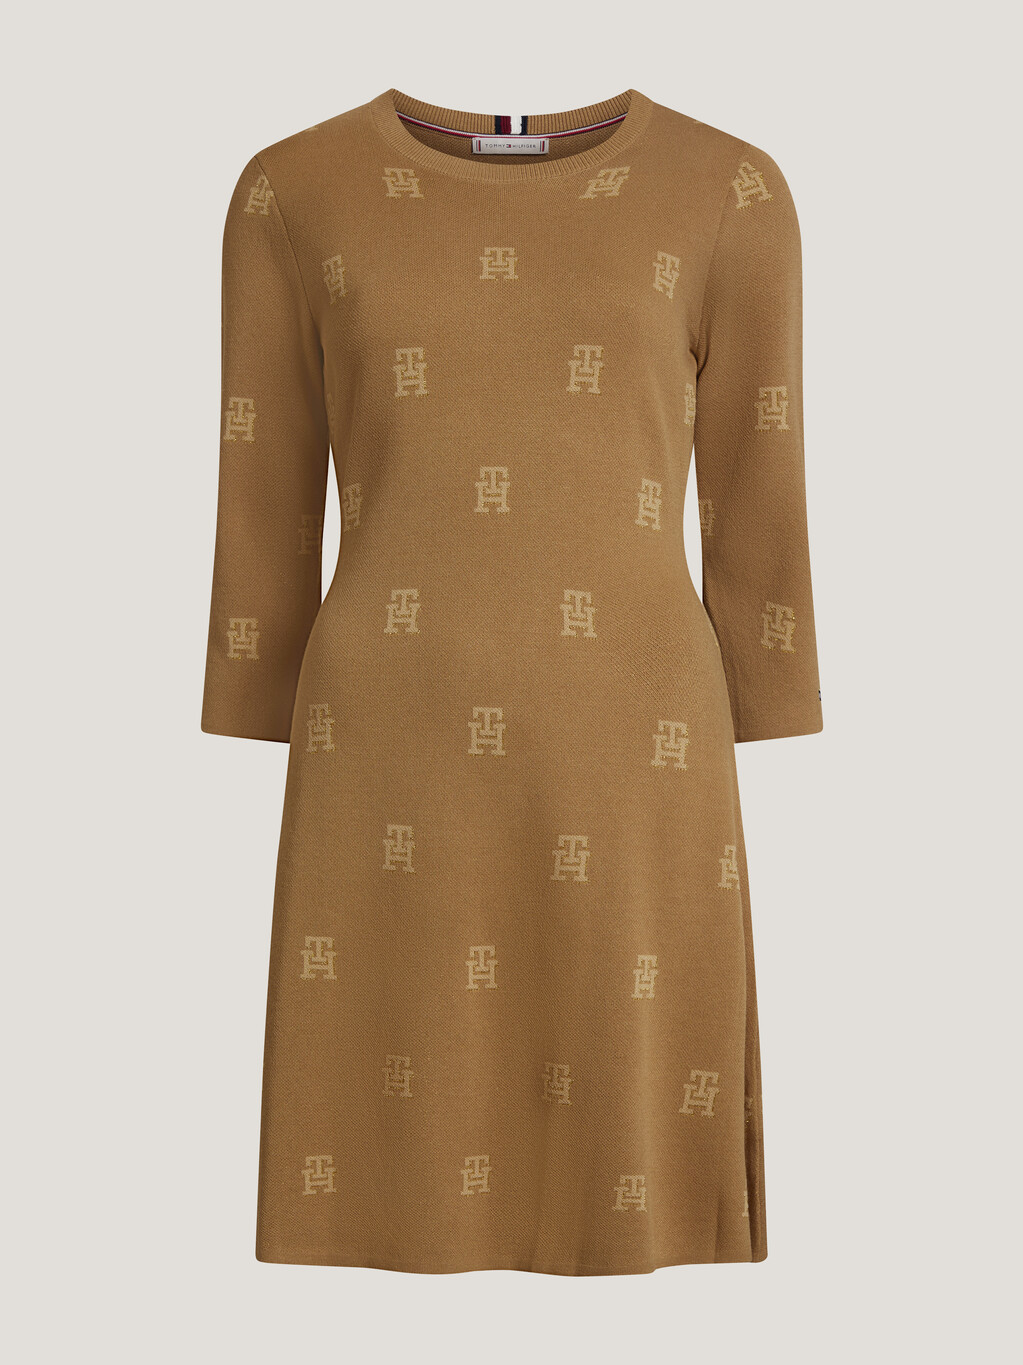 農曆新年 TH Monogram 針織洋裝, Imd Aop Countryside Khaki, hi-res